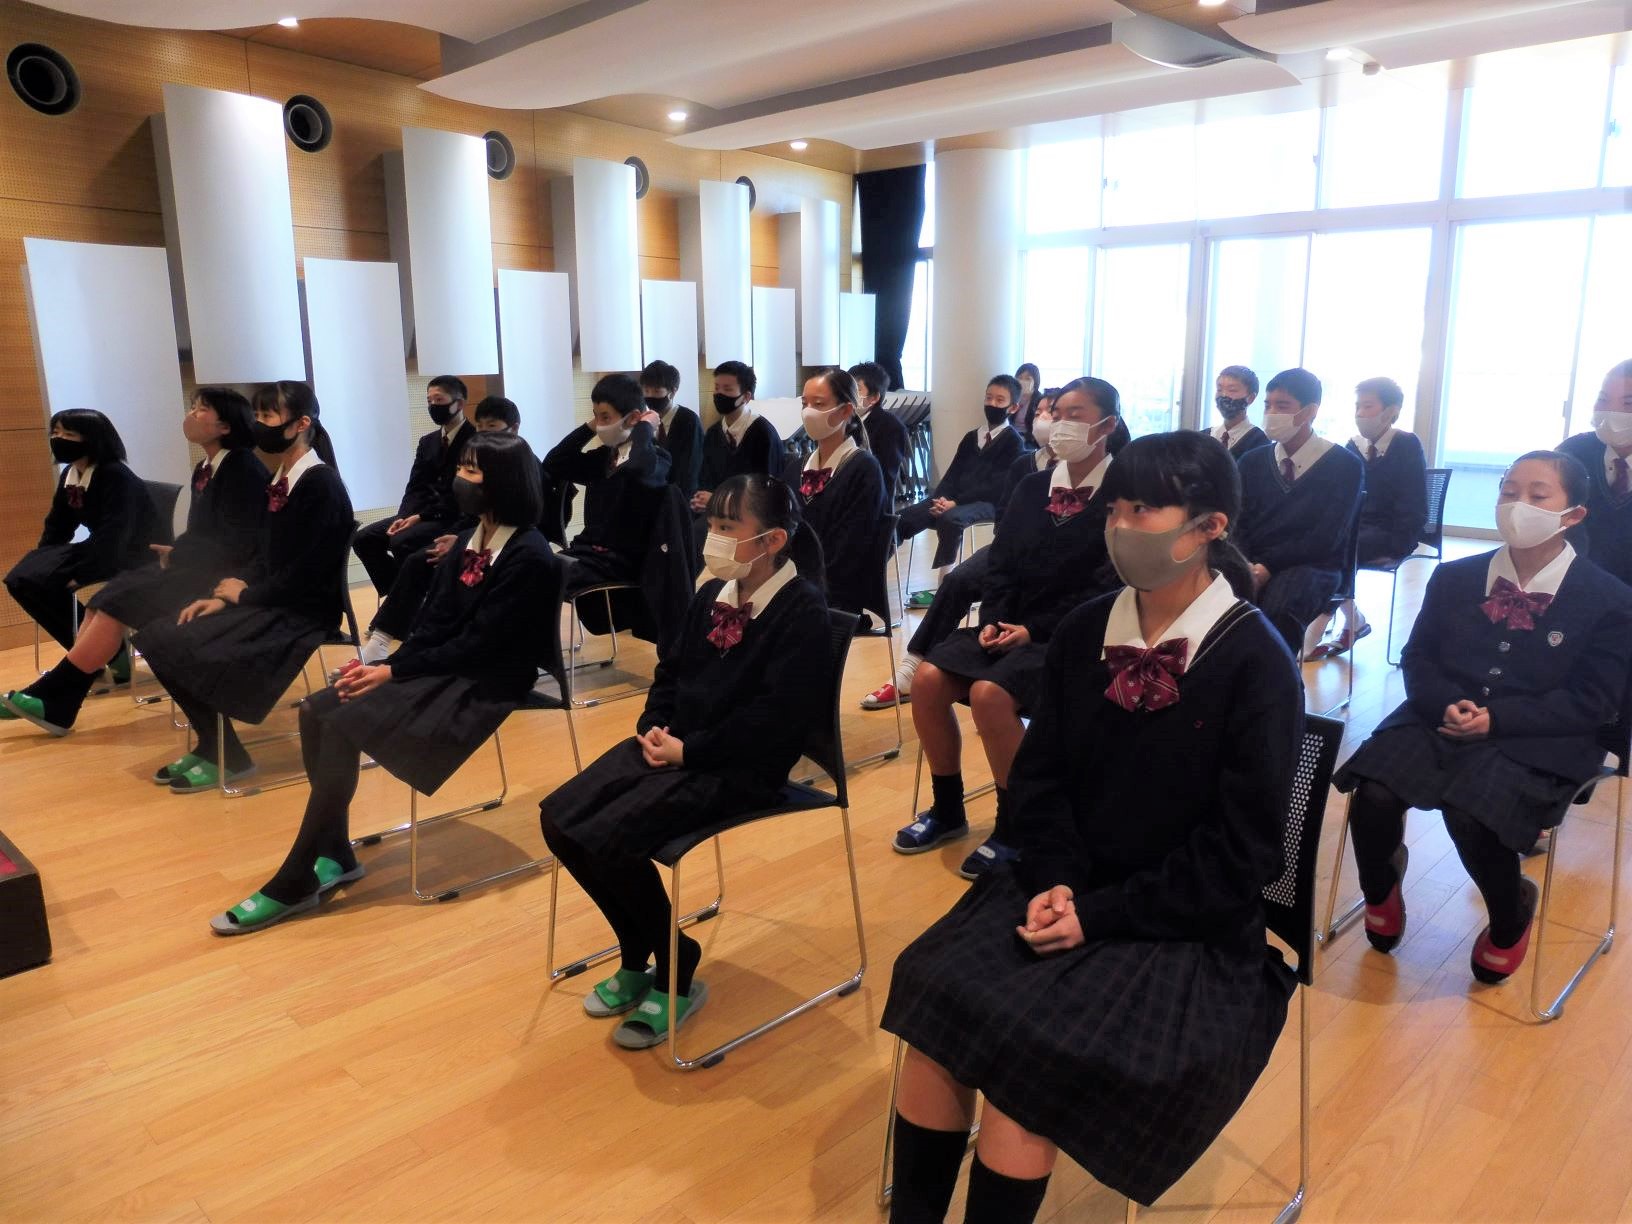 中学生有志 嵐 カイト 歌唱動画撮影 城南静岡高等学校 中学校